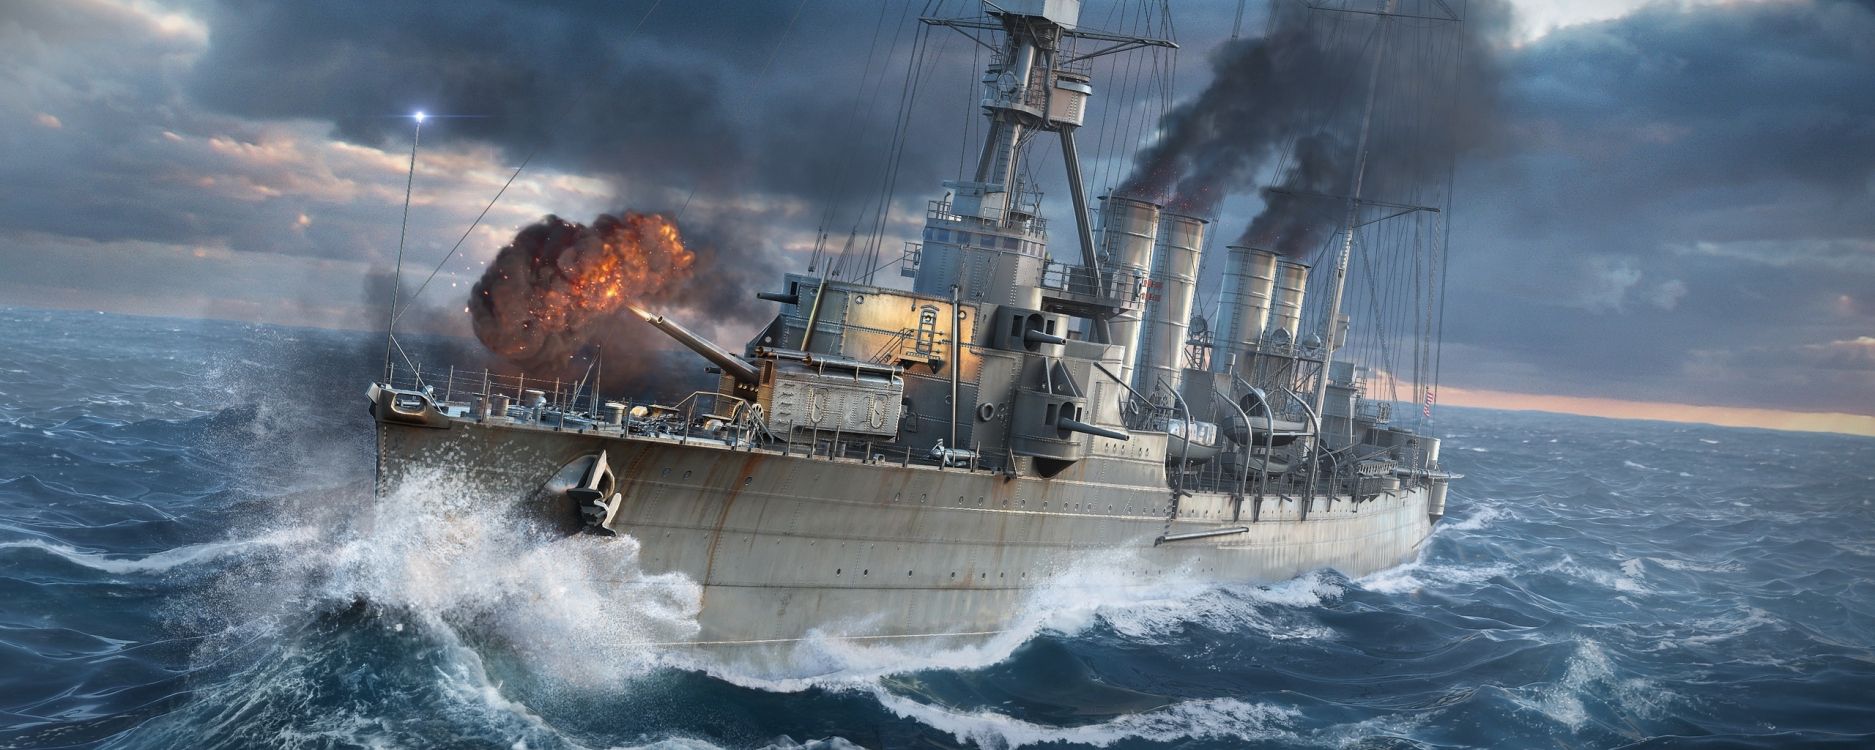 Welt Der Kriegsschiffe, Boot, Wasserfahrzeug, Schiff, Kriegsschiff. Wallpaper in 2560x1024 Resolution